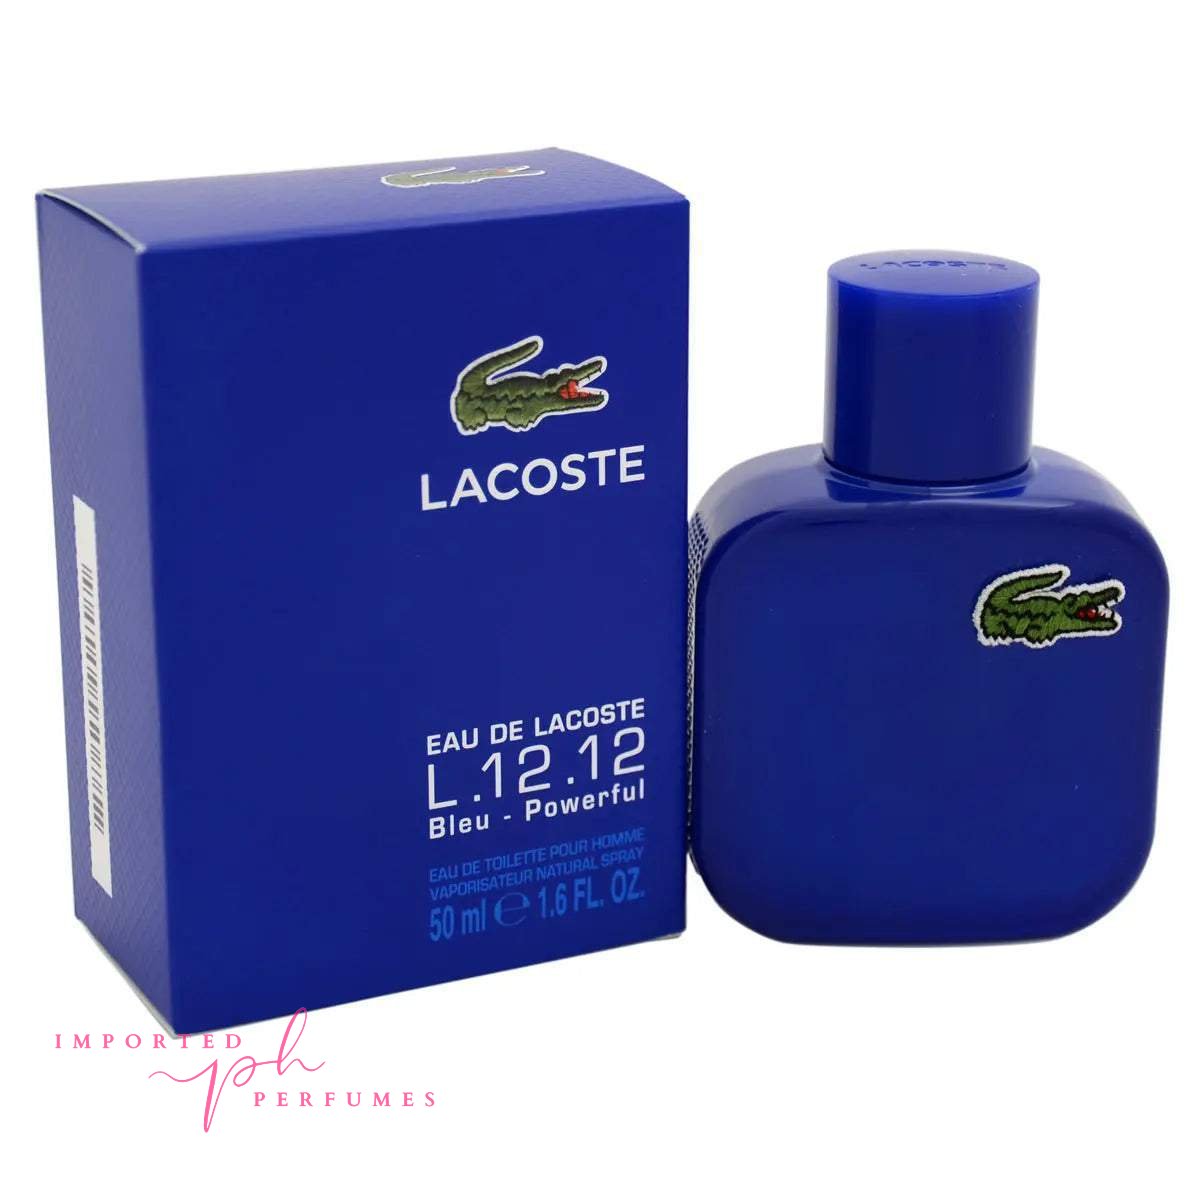 Lacoste Eau de Lacoste L.12.12 Bleu Powerful 100ml For Men-Imported Perfumes Co-for men,Lacoste,Lacoste for men,Lacoste men,men